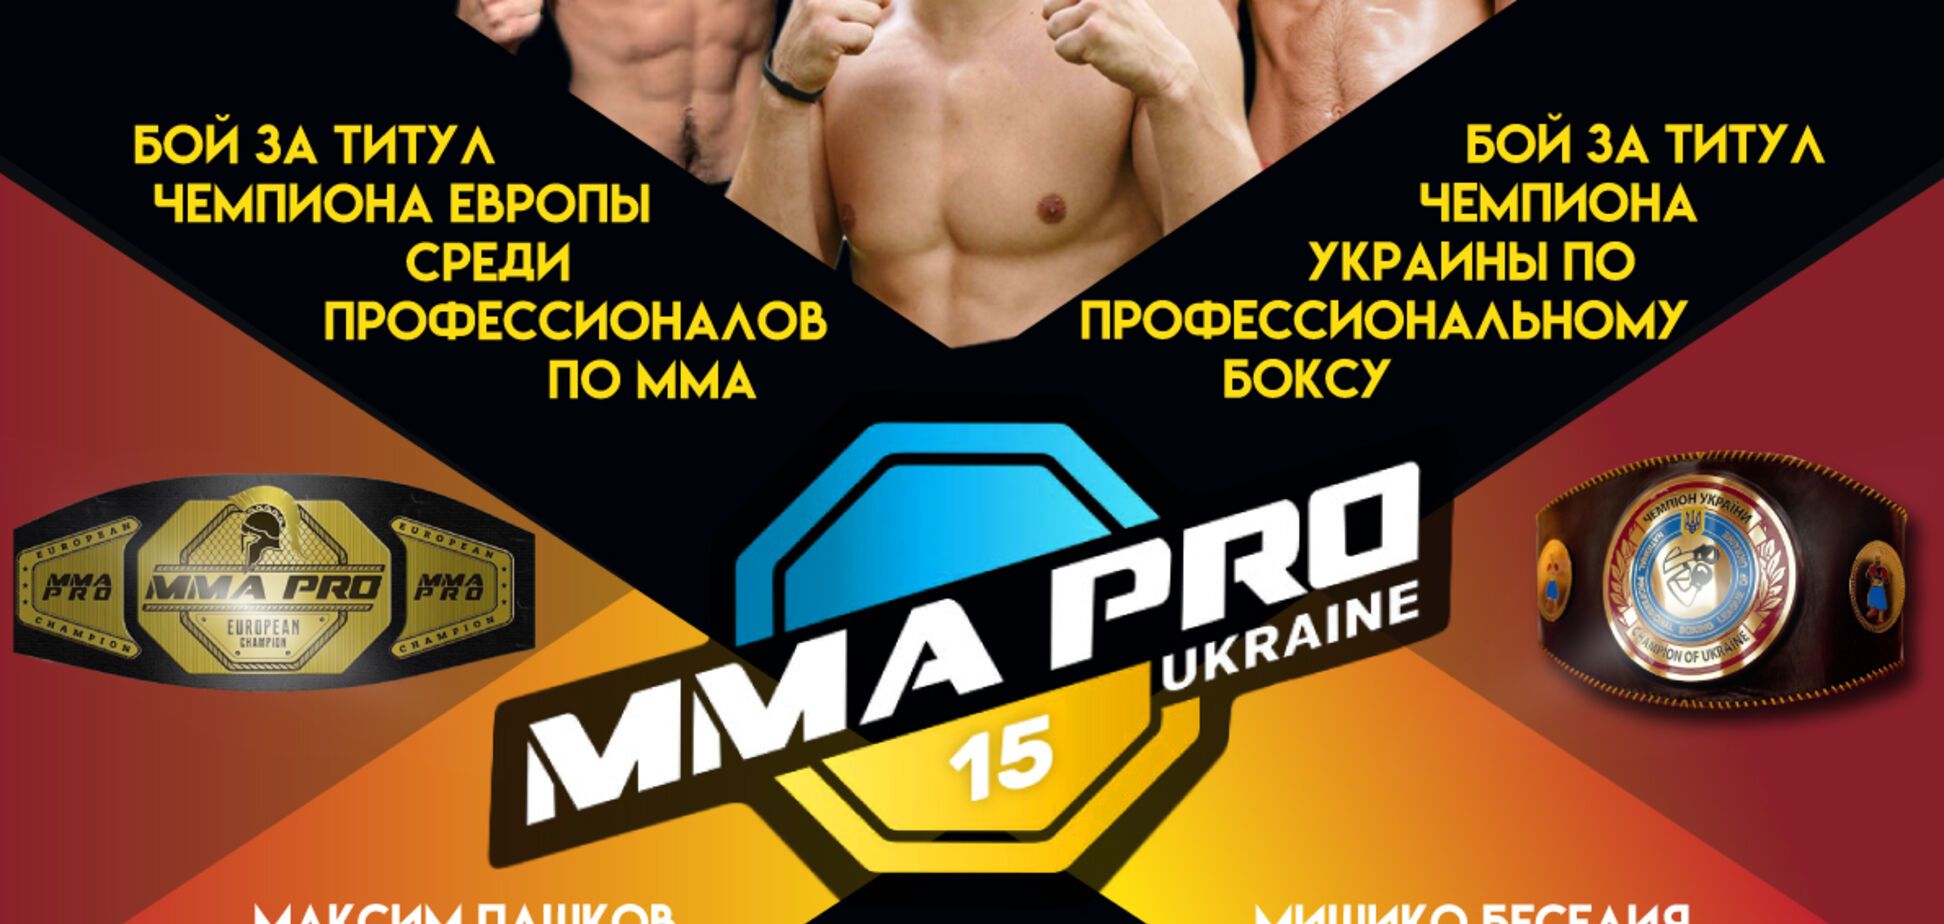 Двойной удар: на турнире MMA PRO Ukraine 15 решится судьба двух чемпионских поясов